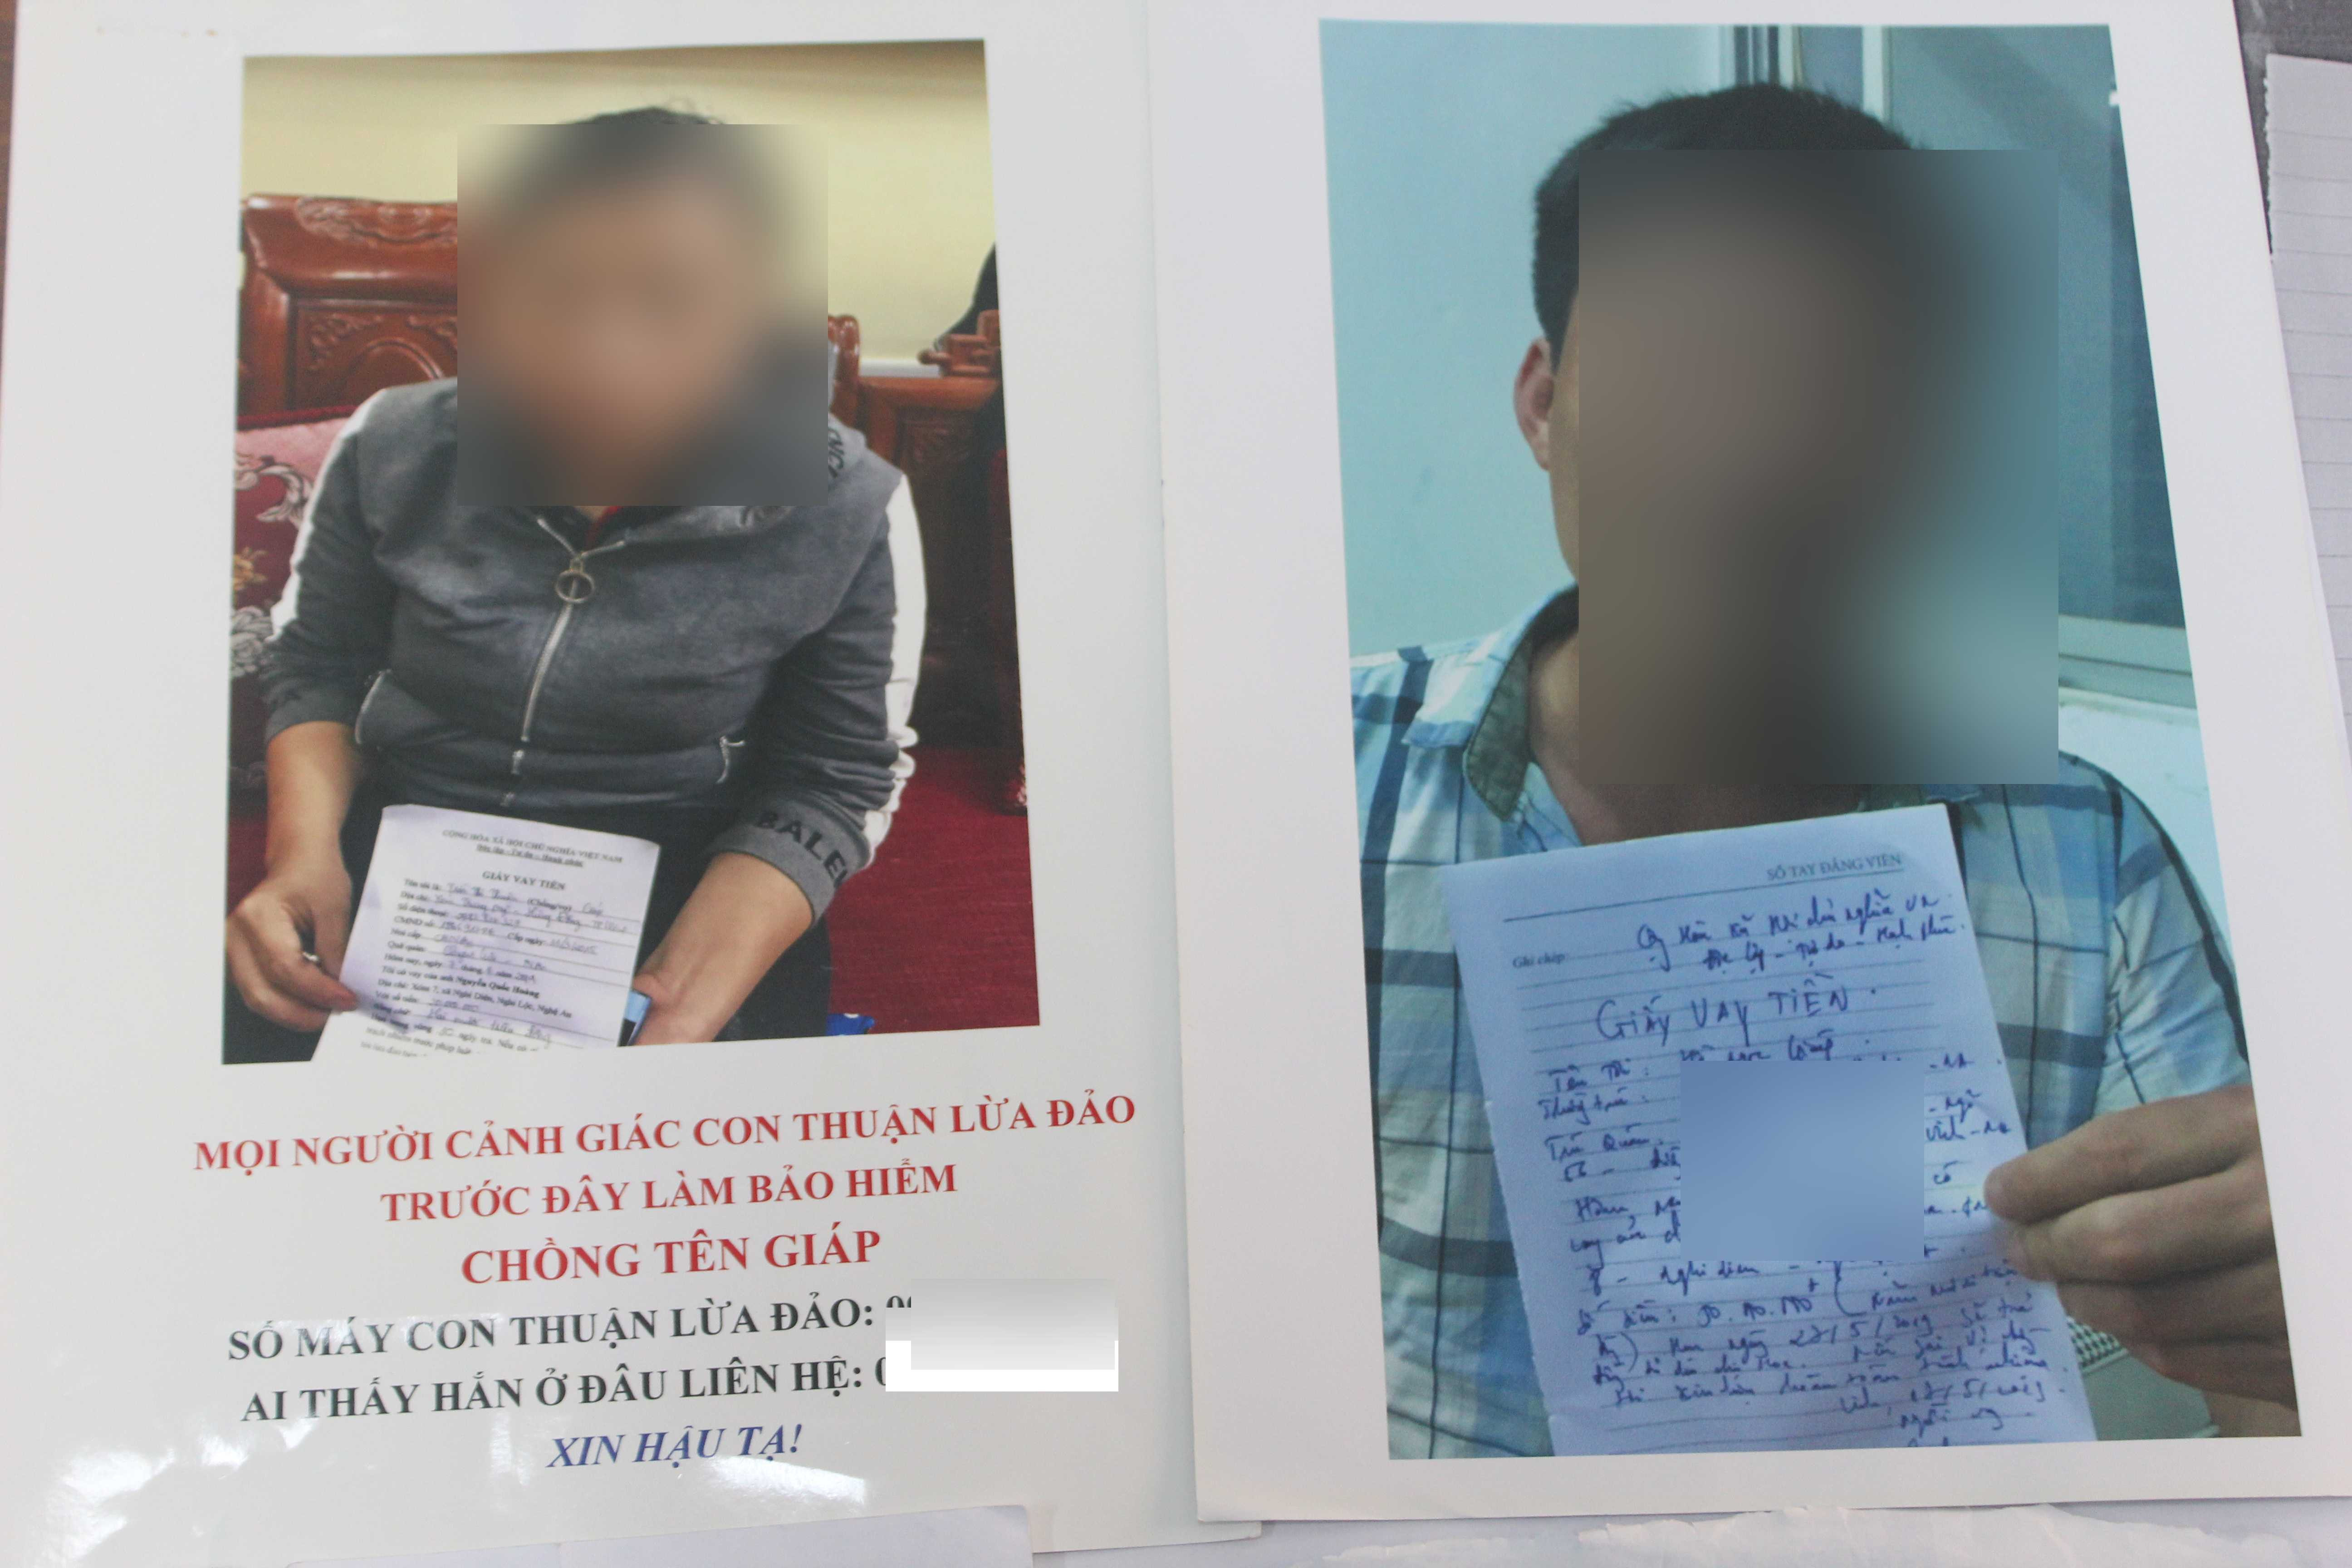 Những tấm ảnh đầy đủ các thông tin của các con nợ được đăng lên trang mạng xã hội nhằm khủng bố tinh thần. Ảnh: Quỳnh Trang